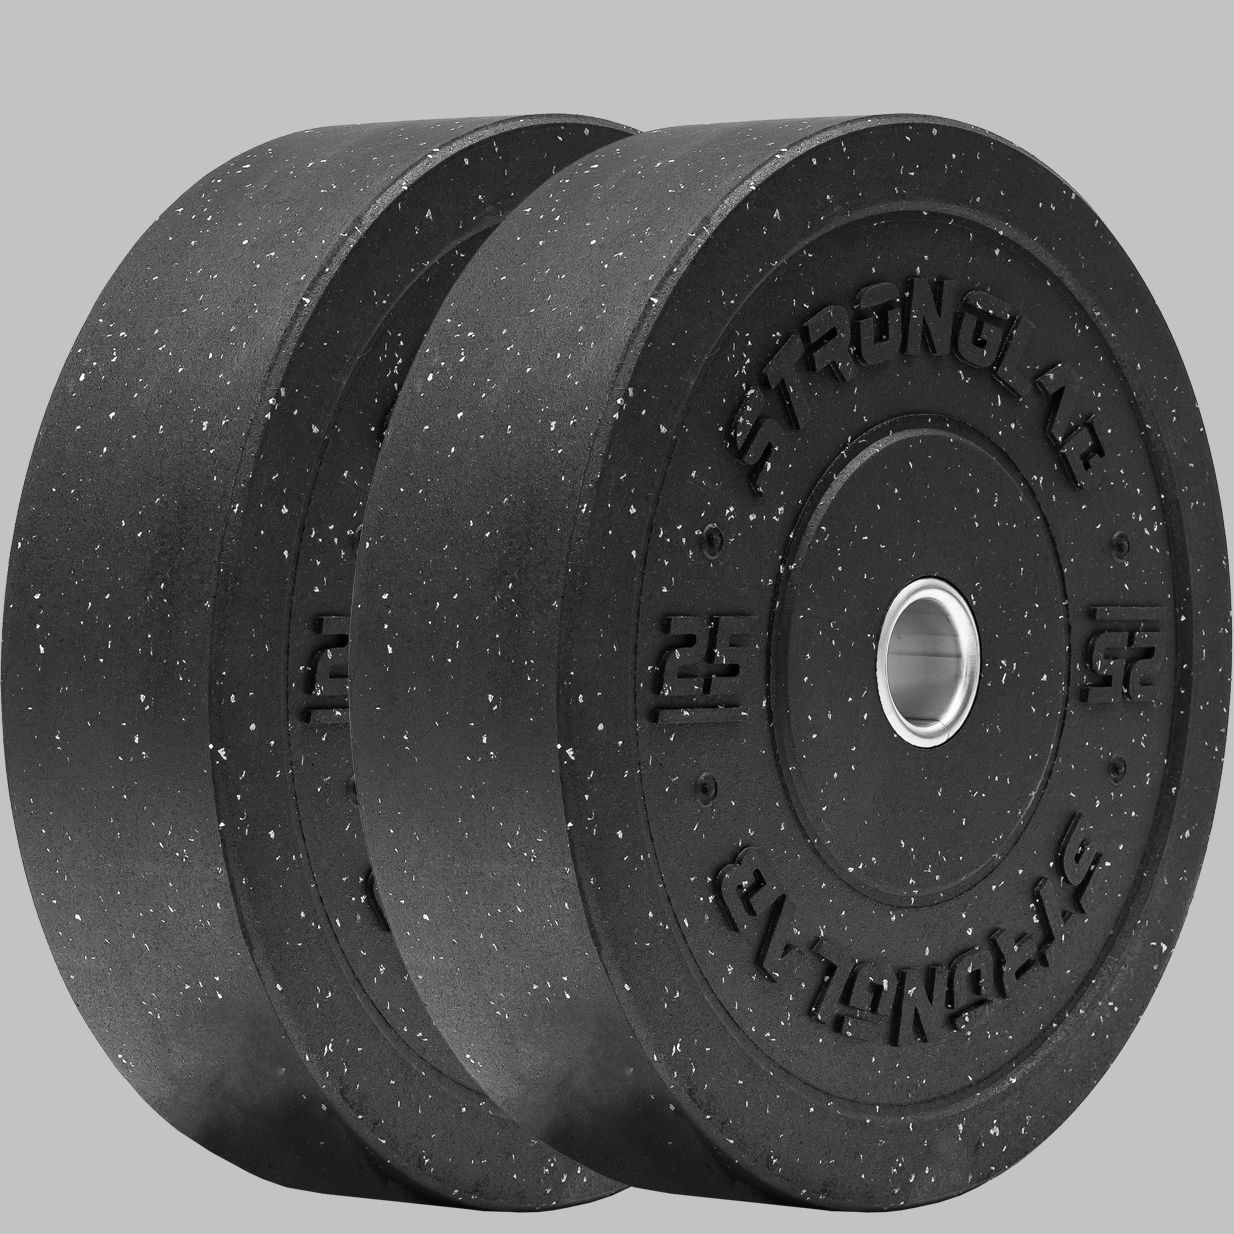 Stronglab - Heavy Duty Crosstraining Rubber Bumpler Plate Pair - Ledobható súlytárcsa párban - 2x25kg